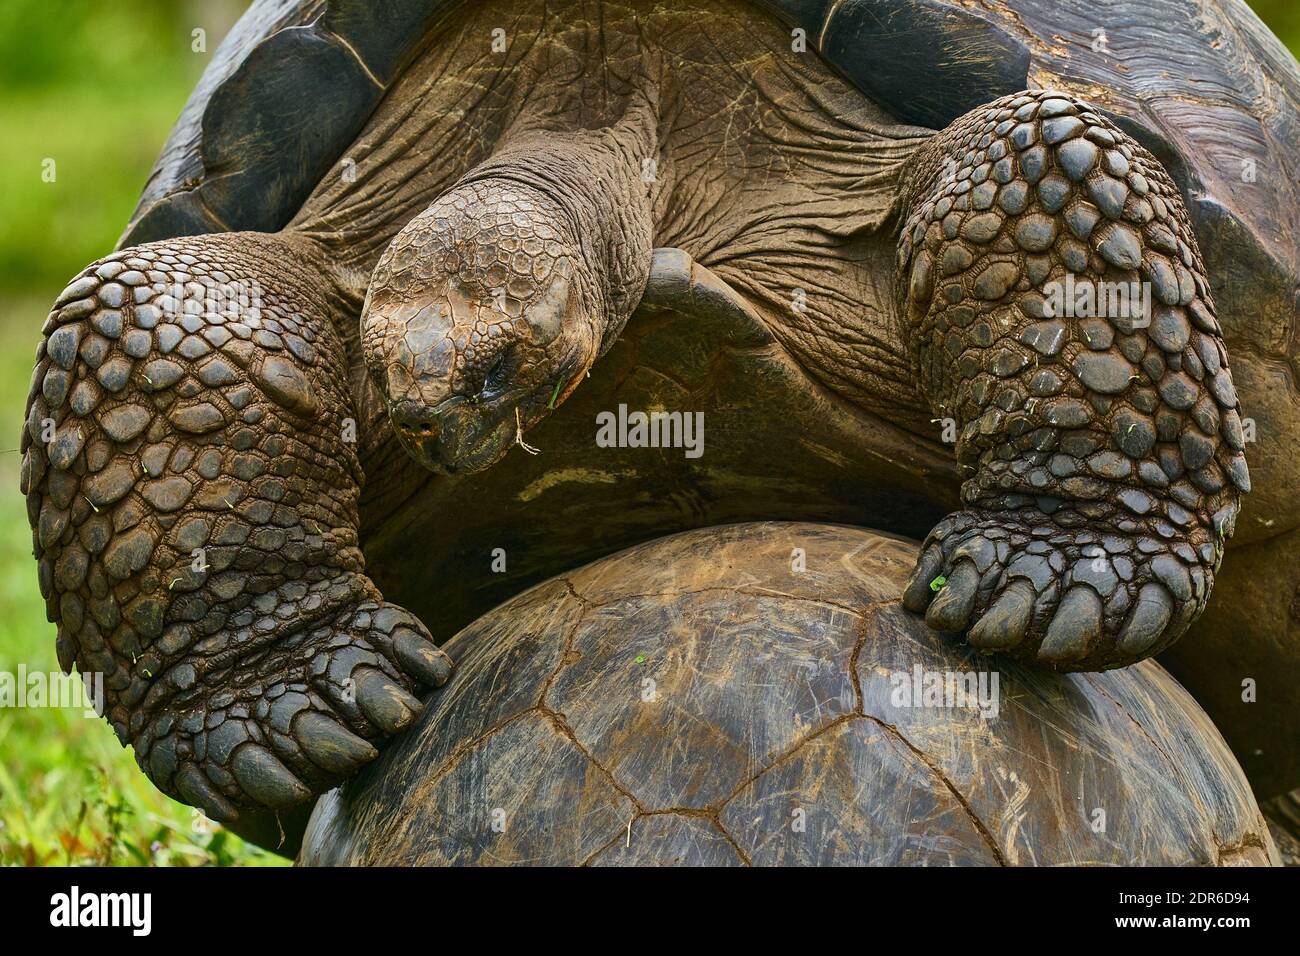 Closeup, apareamiento de la tortuga de tierra gigante (Chelonoidis nigra), Islas Galápagos Foto de stock